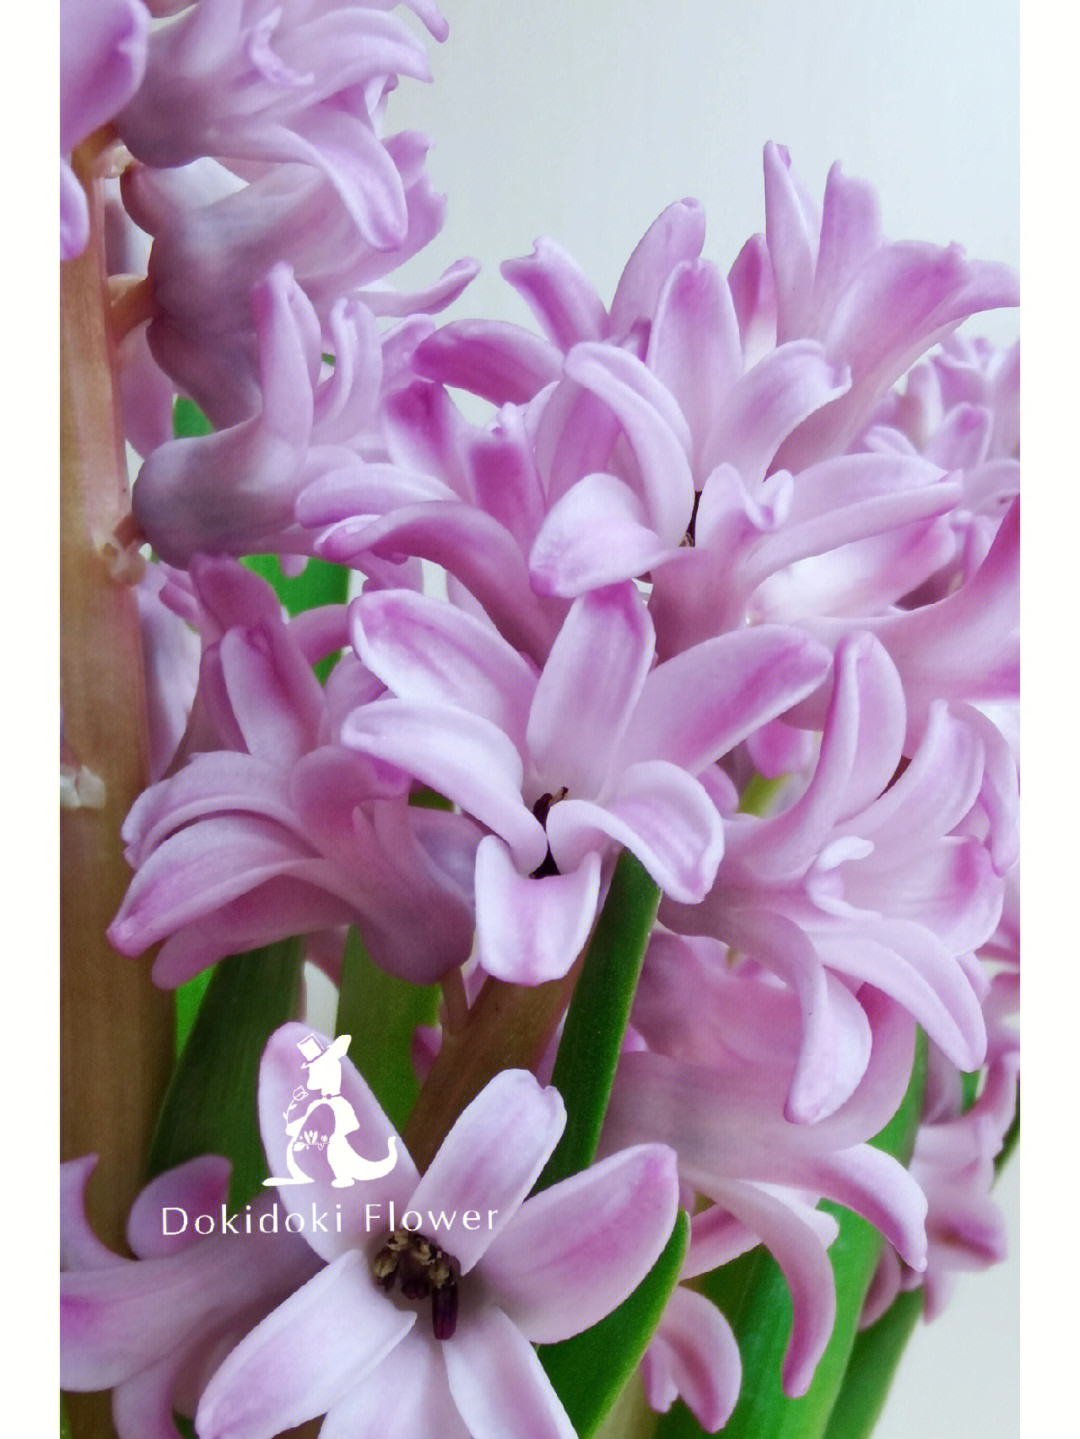 紫色的风信子花语图片